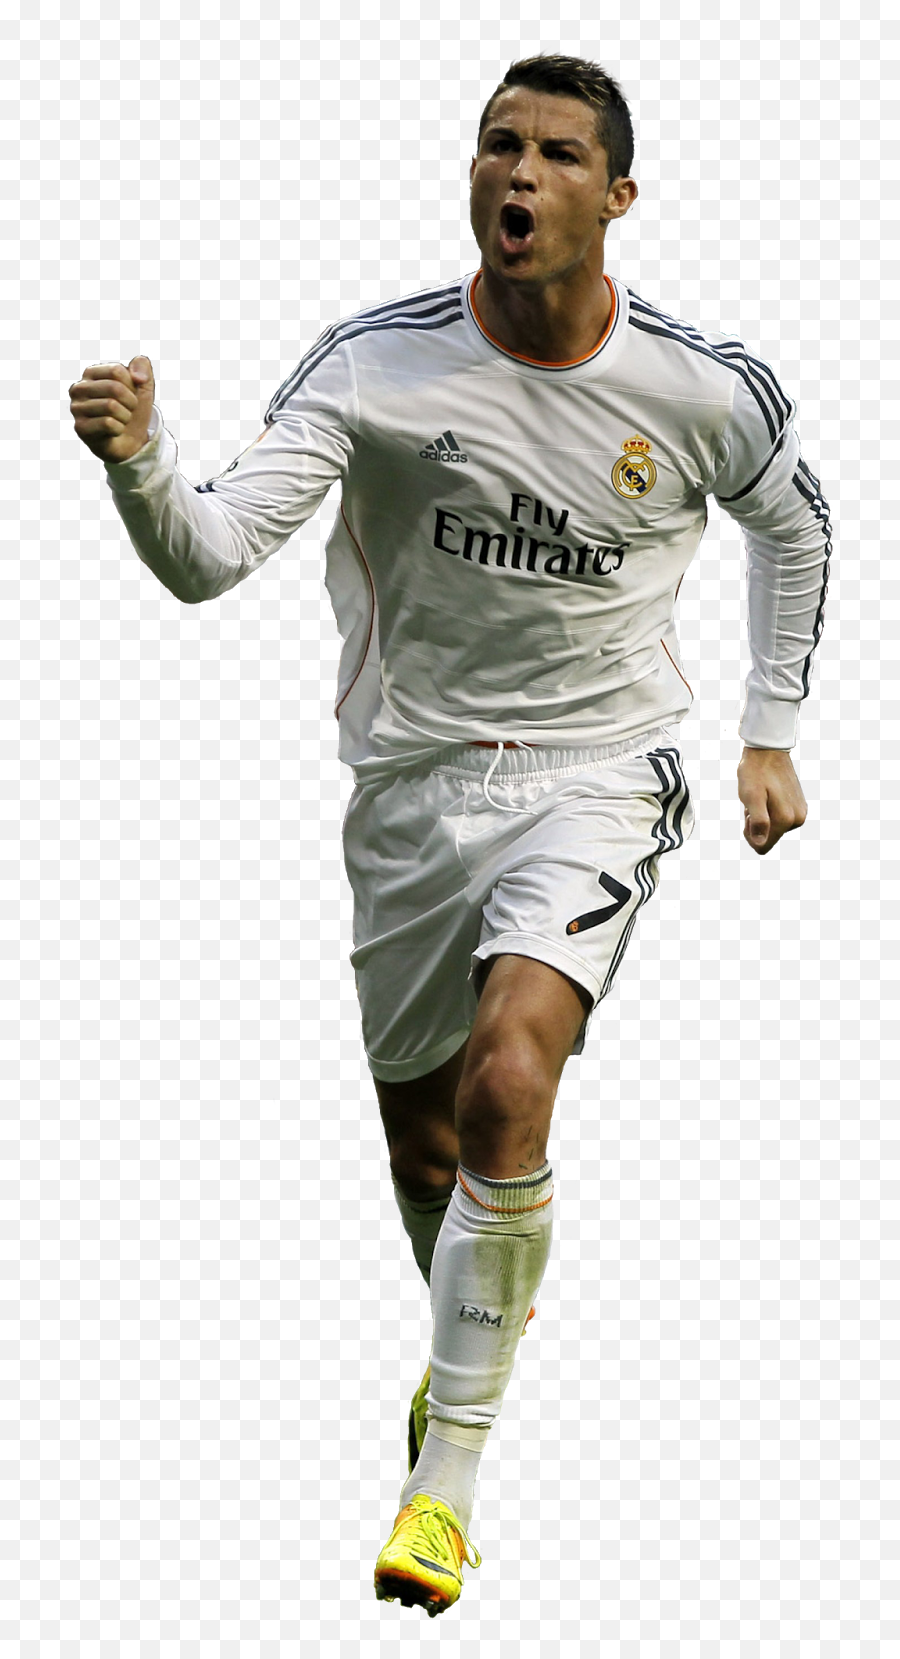 Download - Cristiano Ronaldo Photos Transparent Png,Cristiano Ronaldo Png